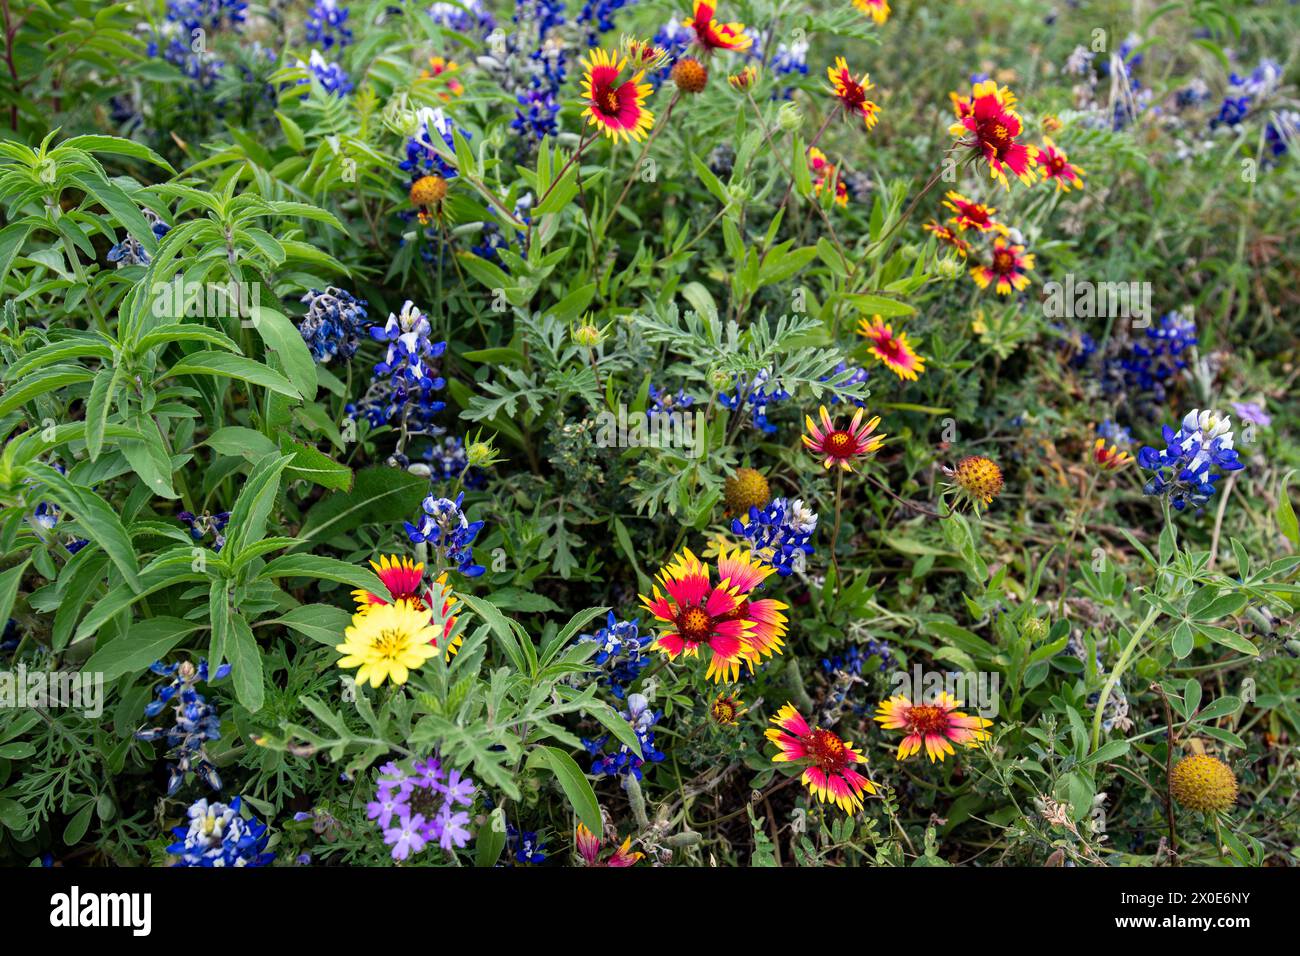 Eine lebendige Mischung aus Wildblumen, einschließlich Blaublumen und indischen Decken-Blüten in einem üppigen Feld. Die leuchtenden roten, blauen und gelben Blüten heben sich hervor Stockfoto